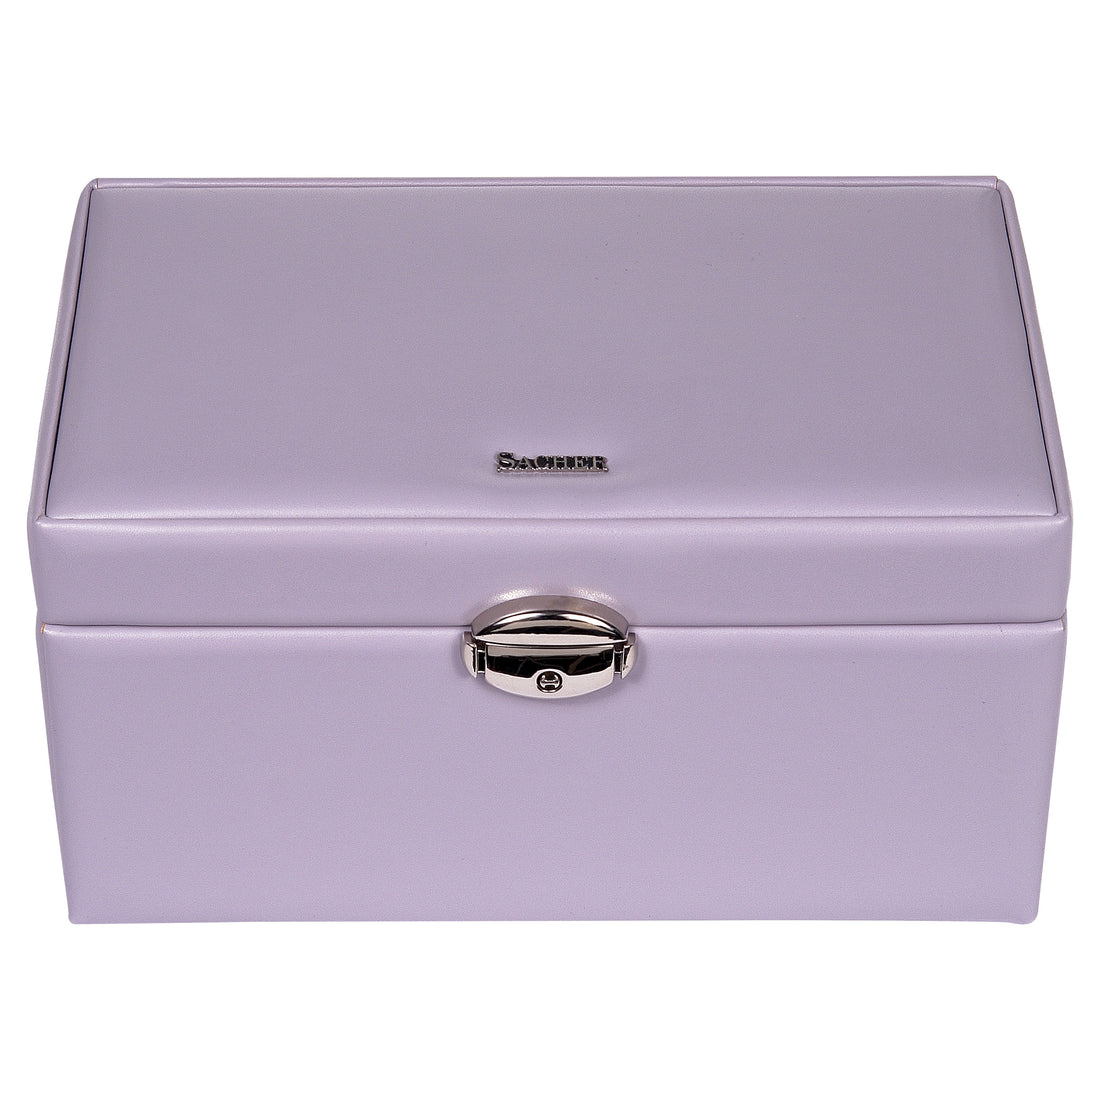 jewellery case Elly coloranti / lilac